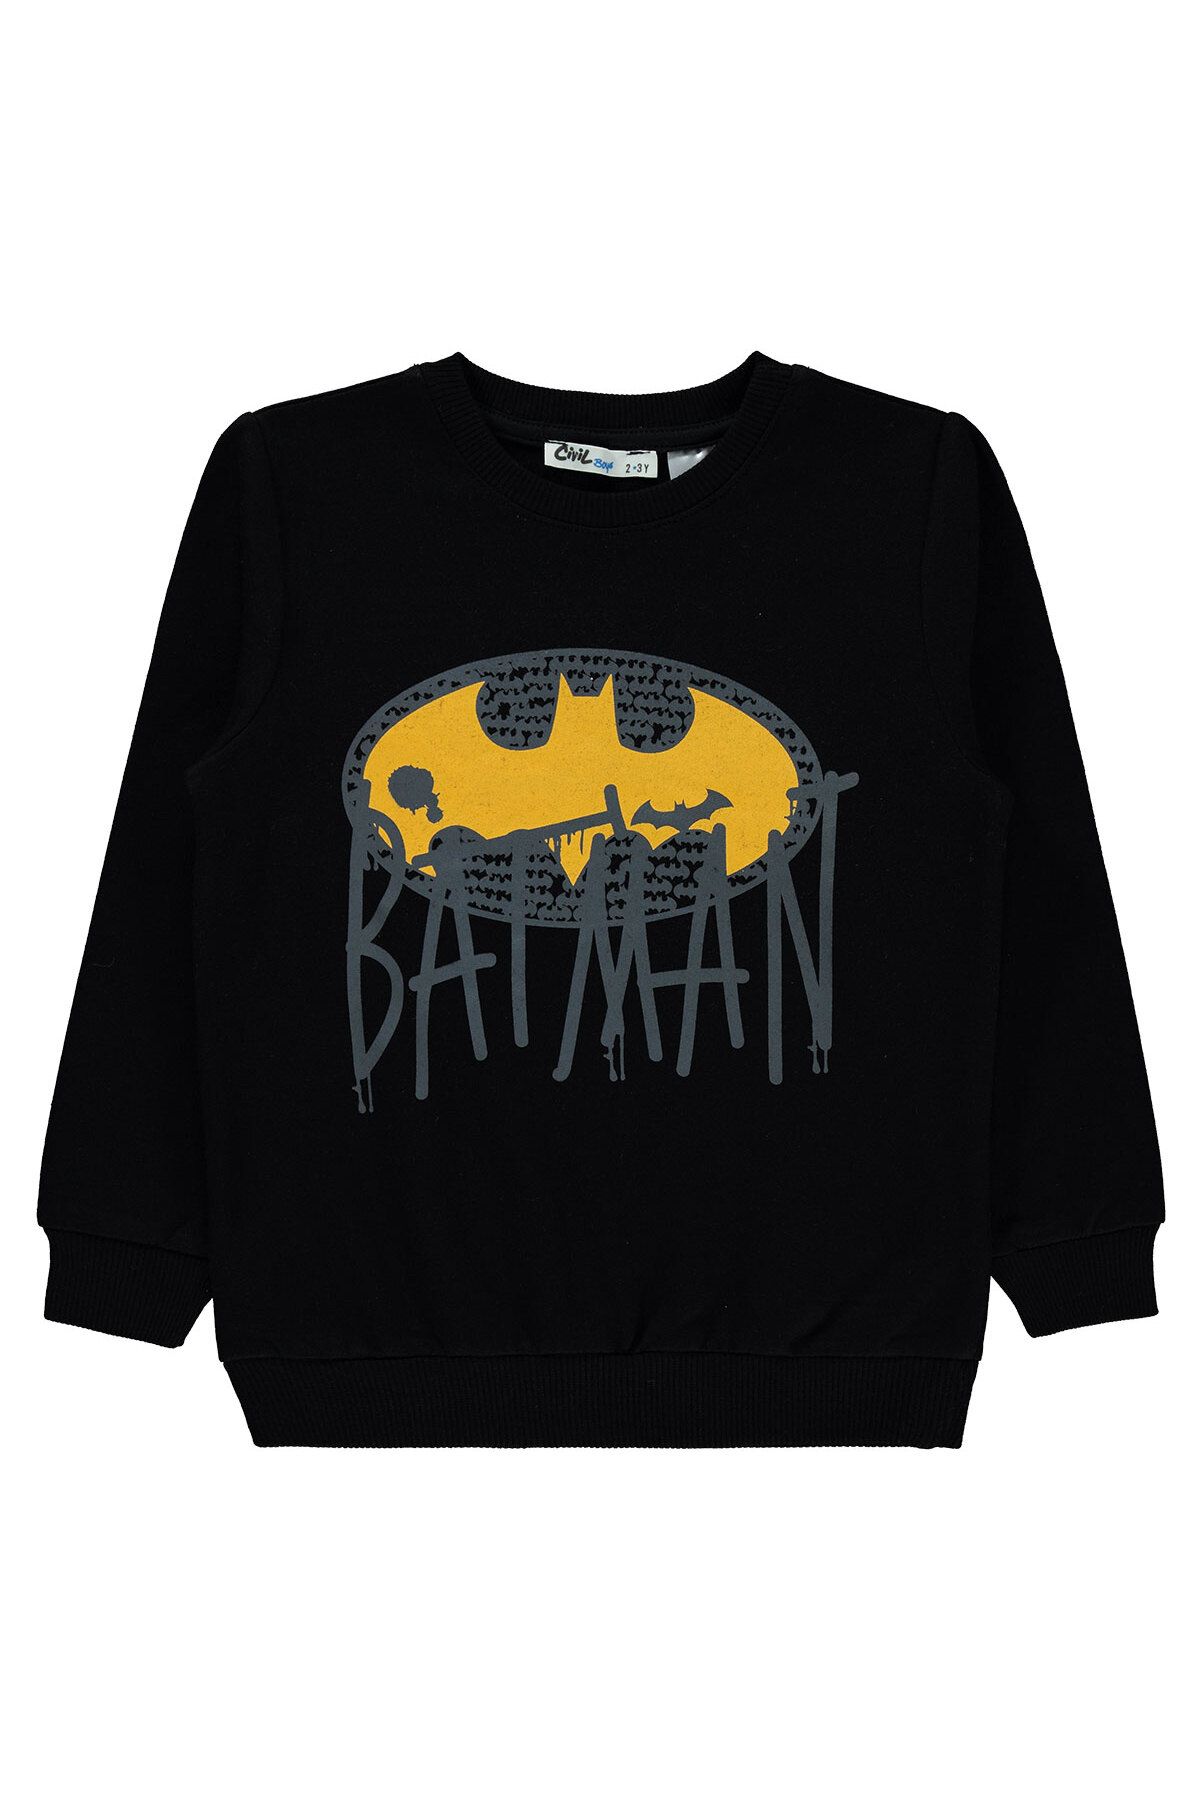 Batman Erkek Çocuk Sweatshirt 2-5 Yaş Siyah 19958168723W1